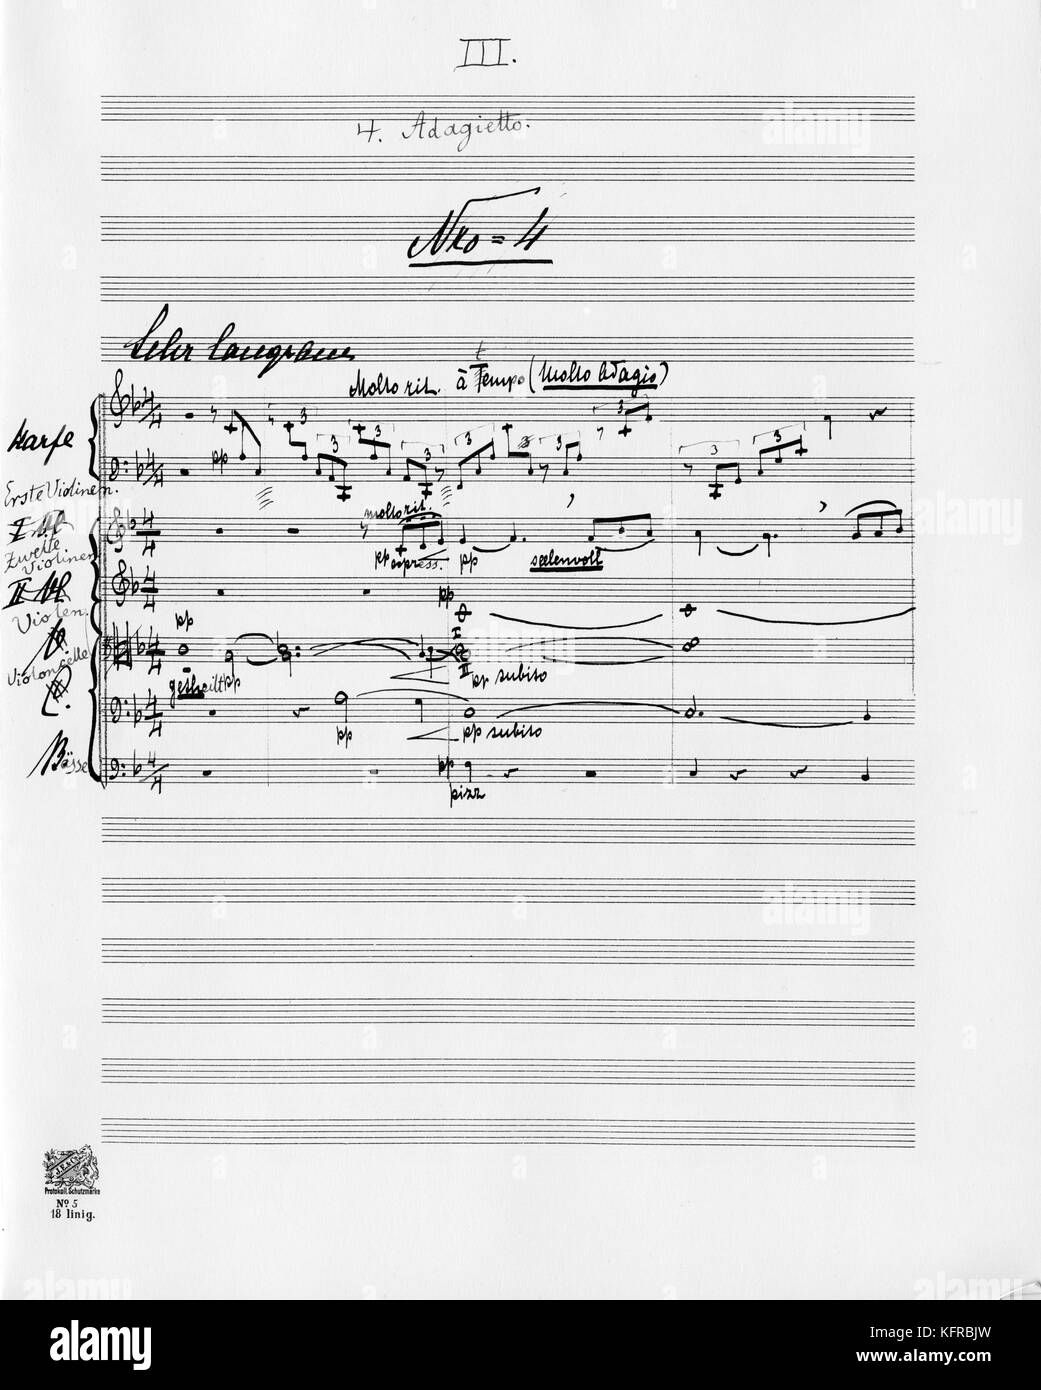 Gustav and Alma - Mahler Symphony No 5